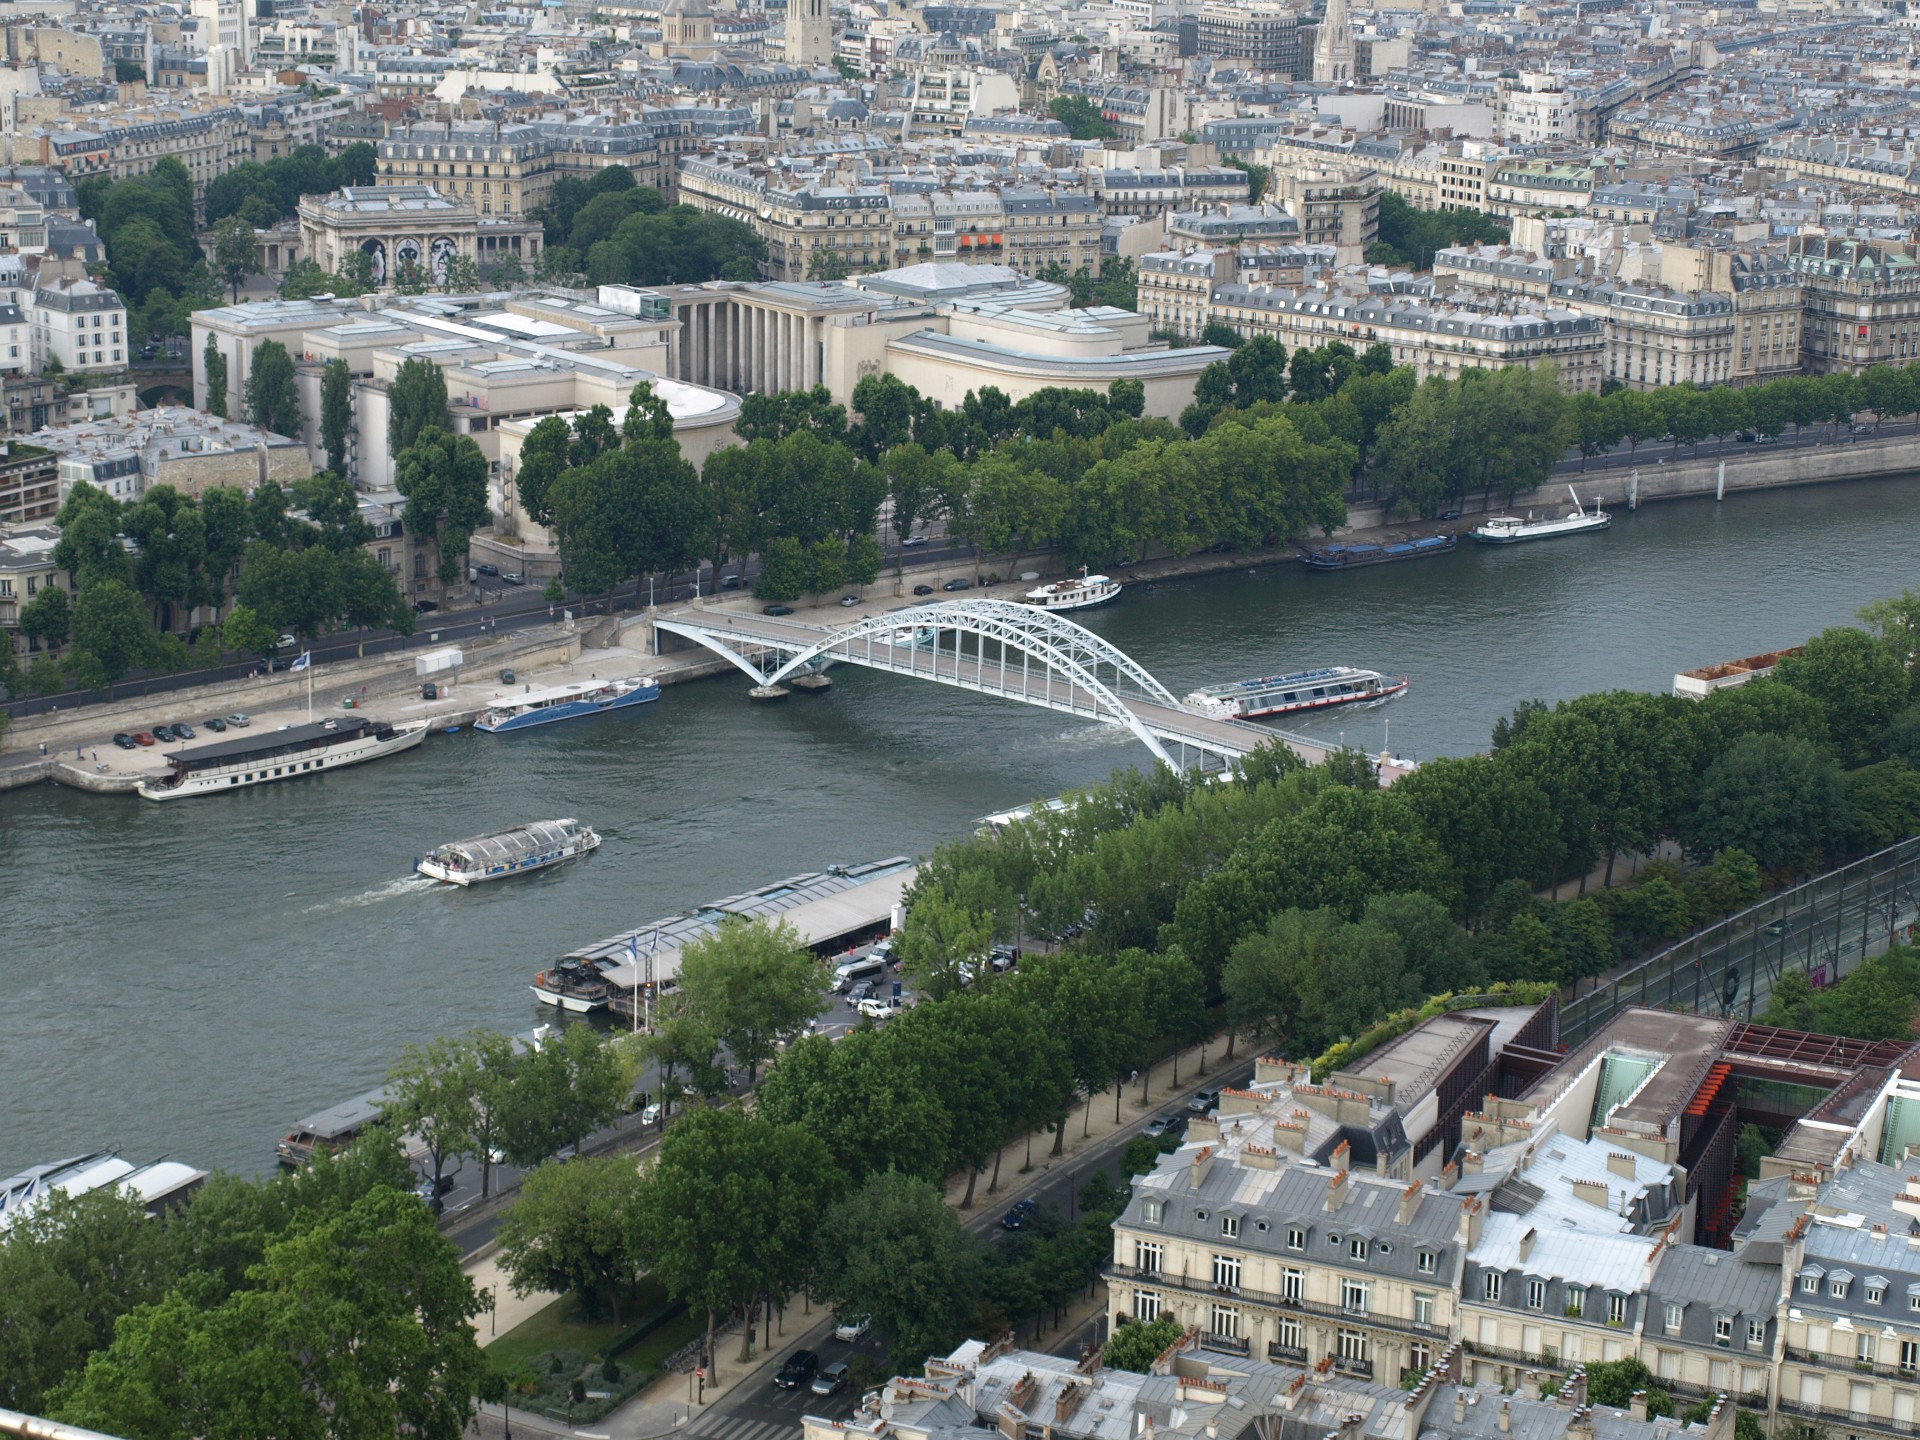 Arched Bridge Over the Seine